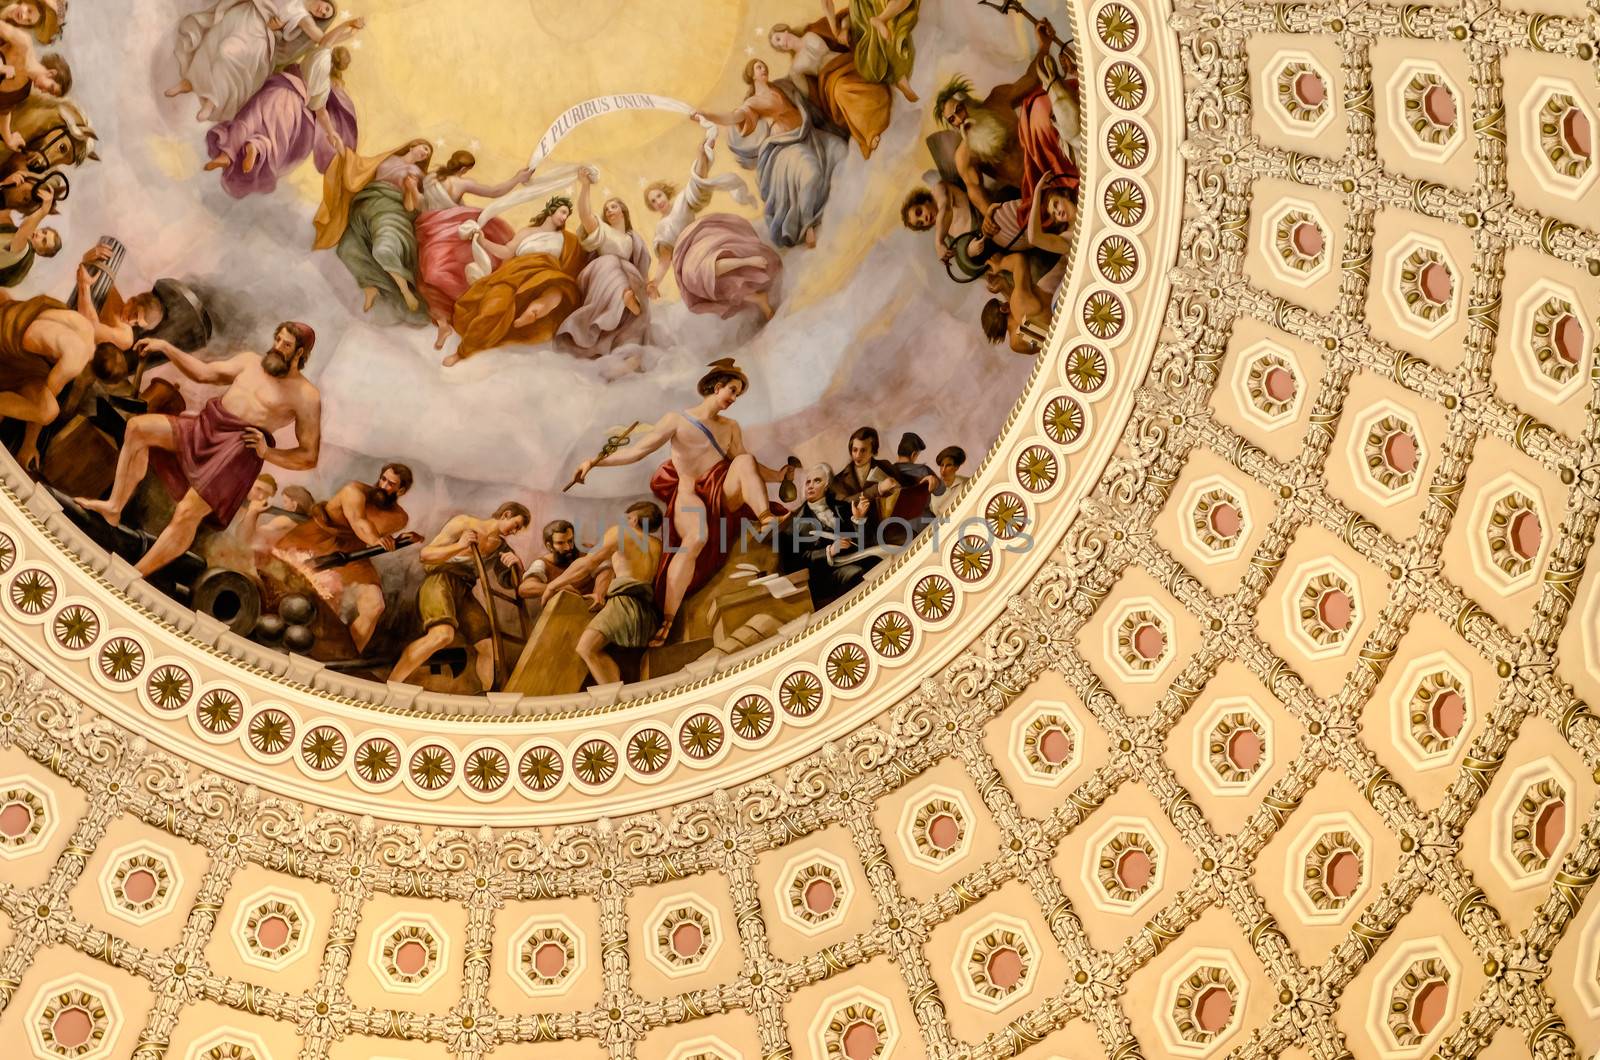 US Capitol Rotunda by marcorubino